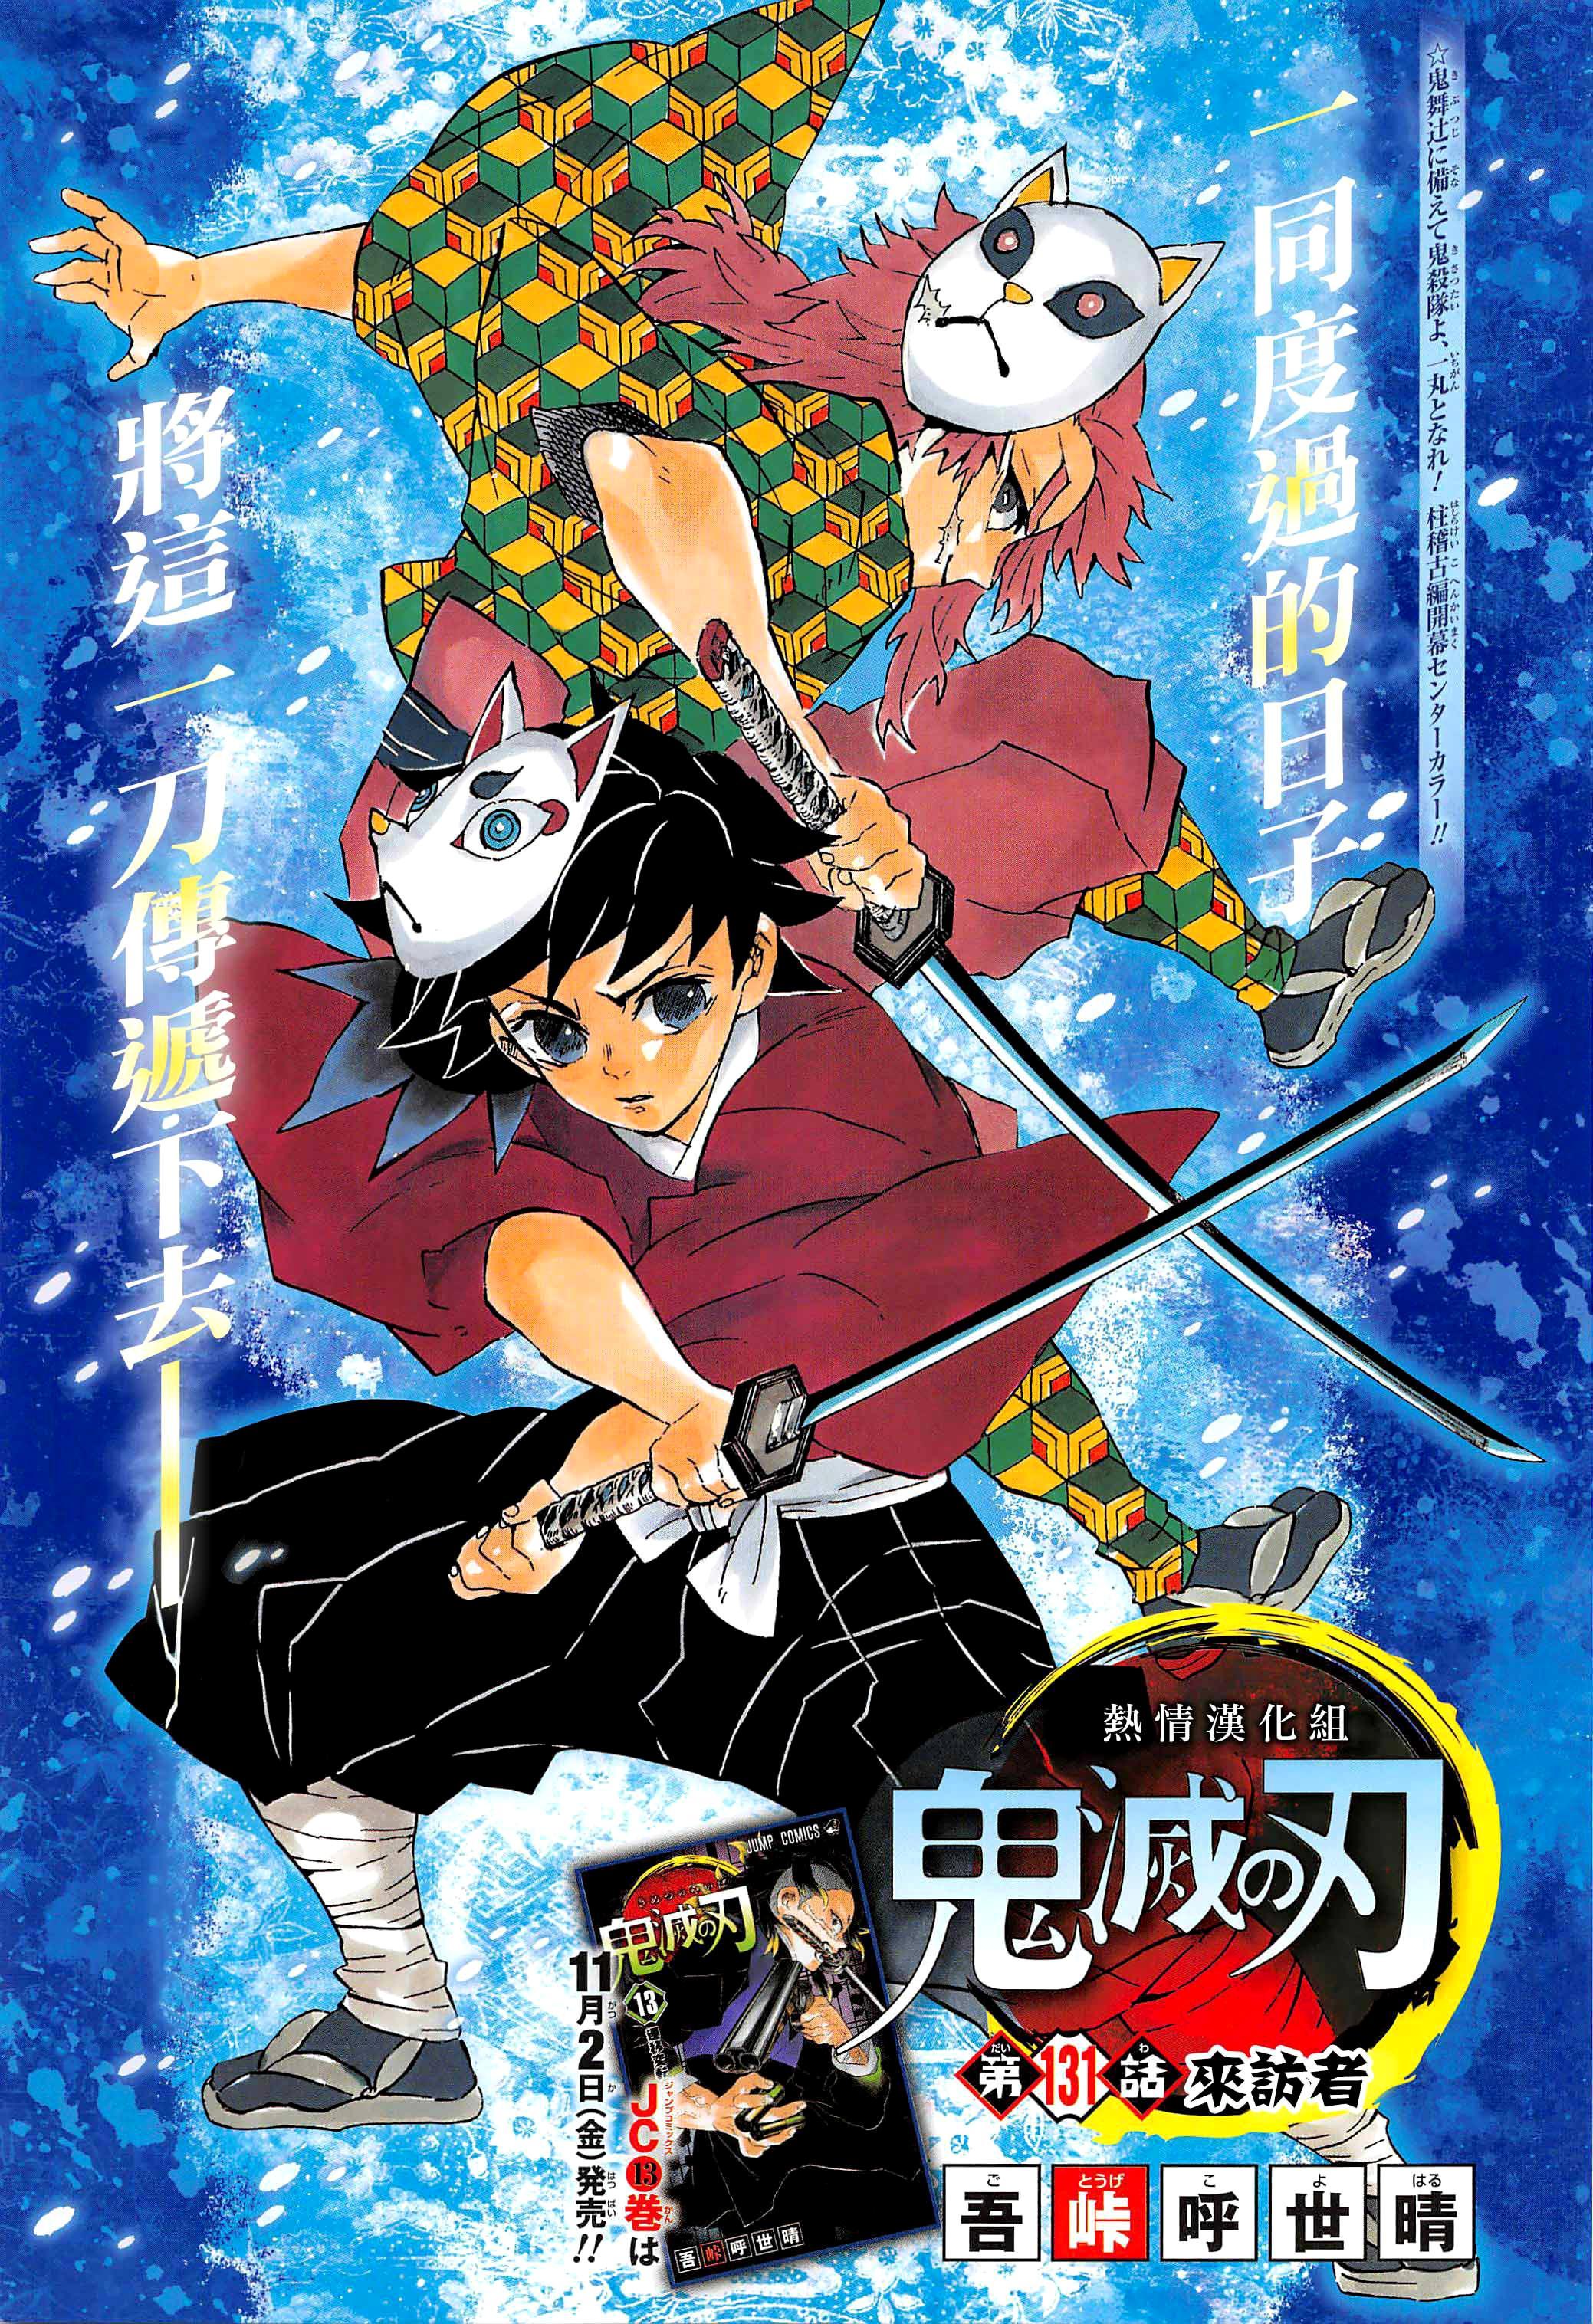 Sabito (Kimetsu No Yaiba) Anime Image Board